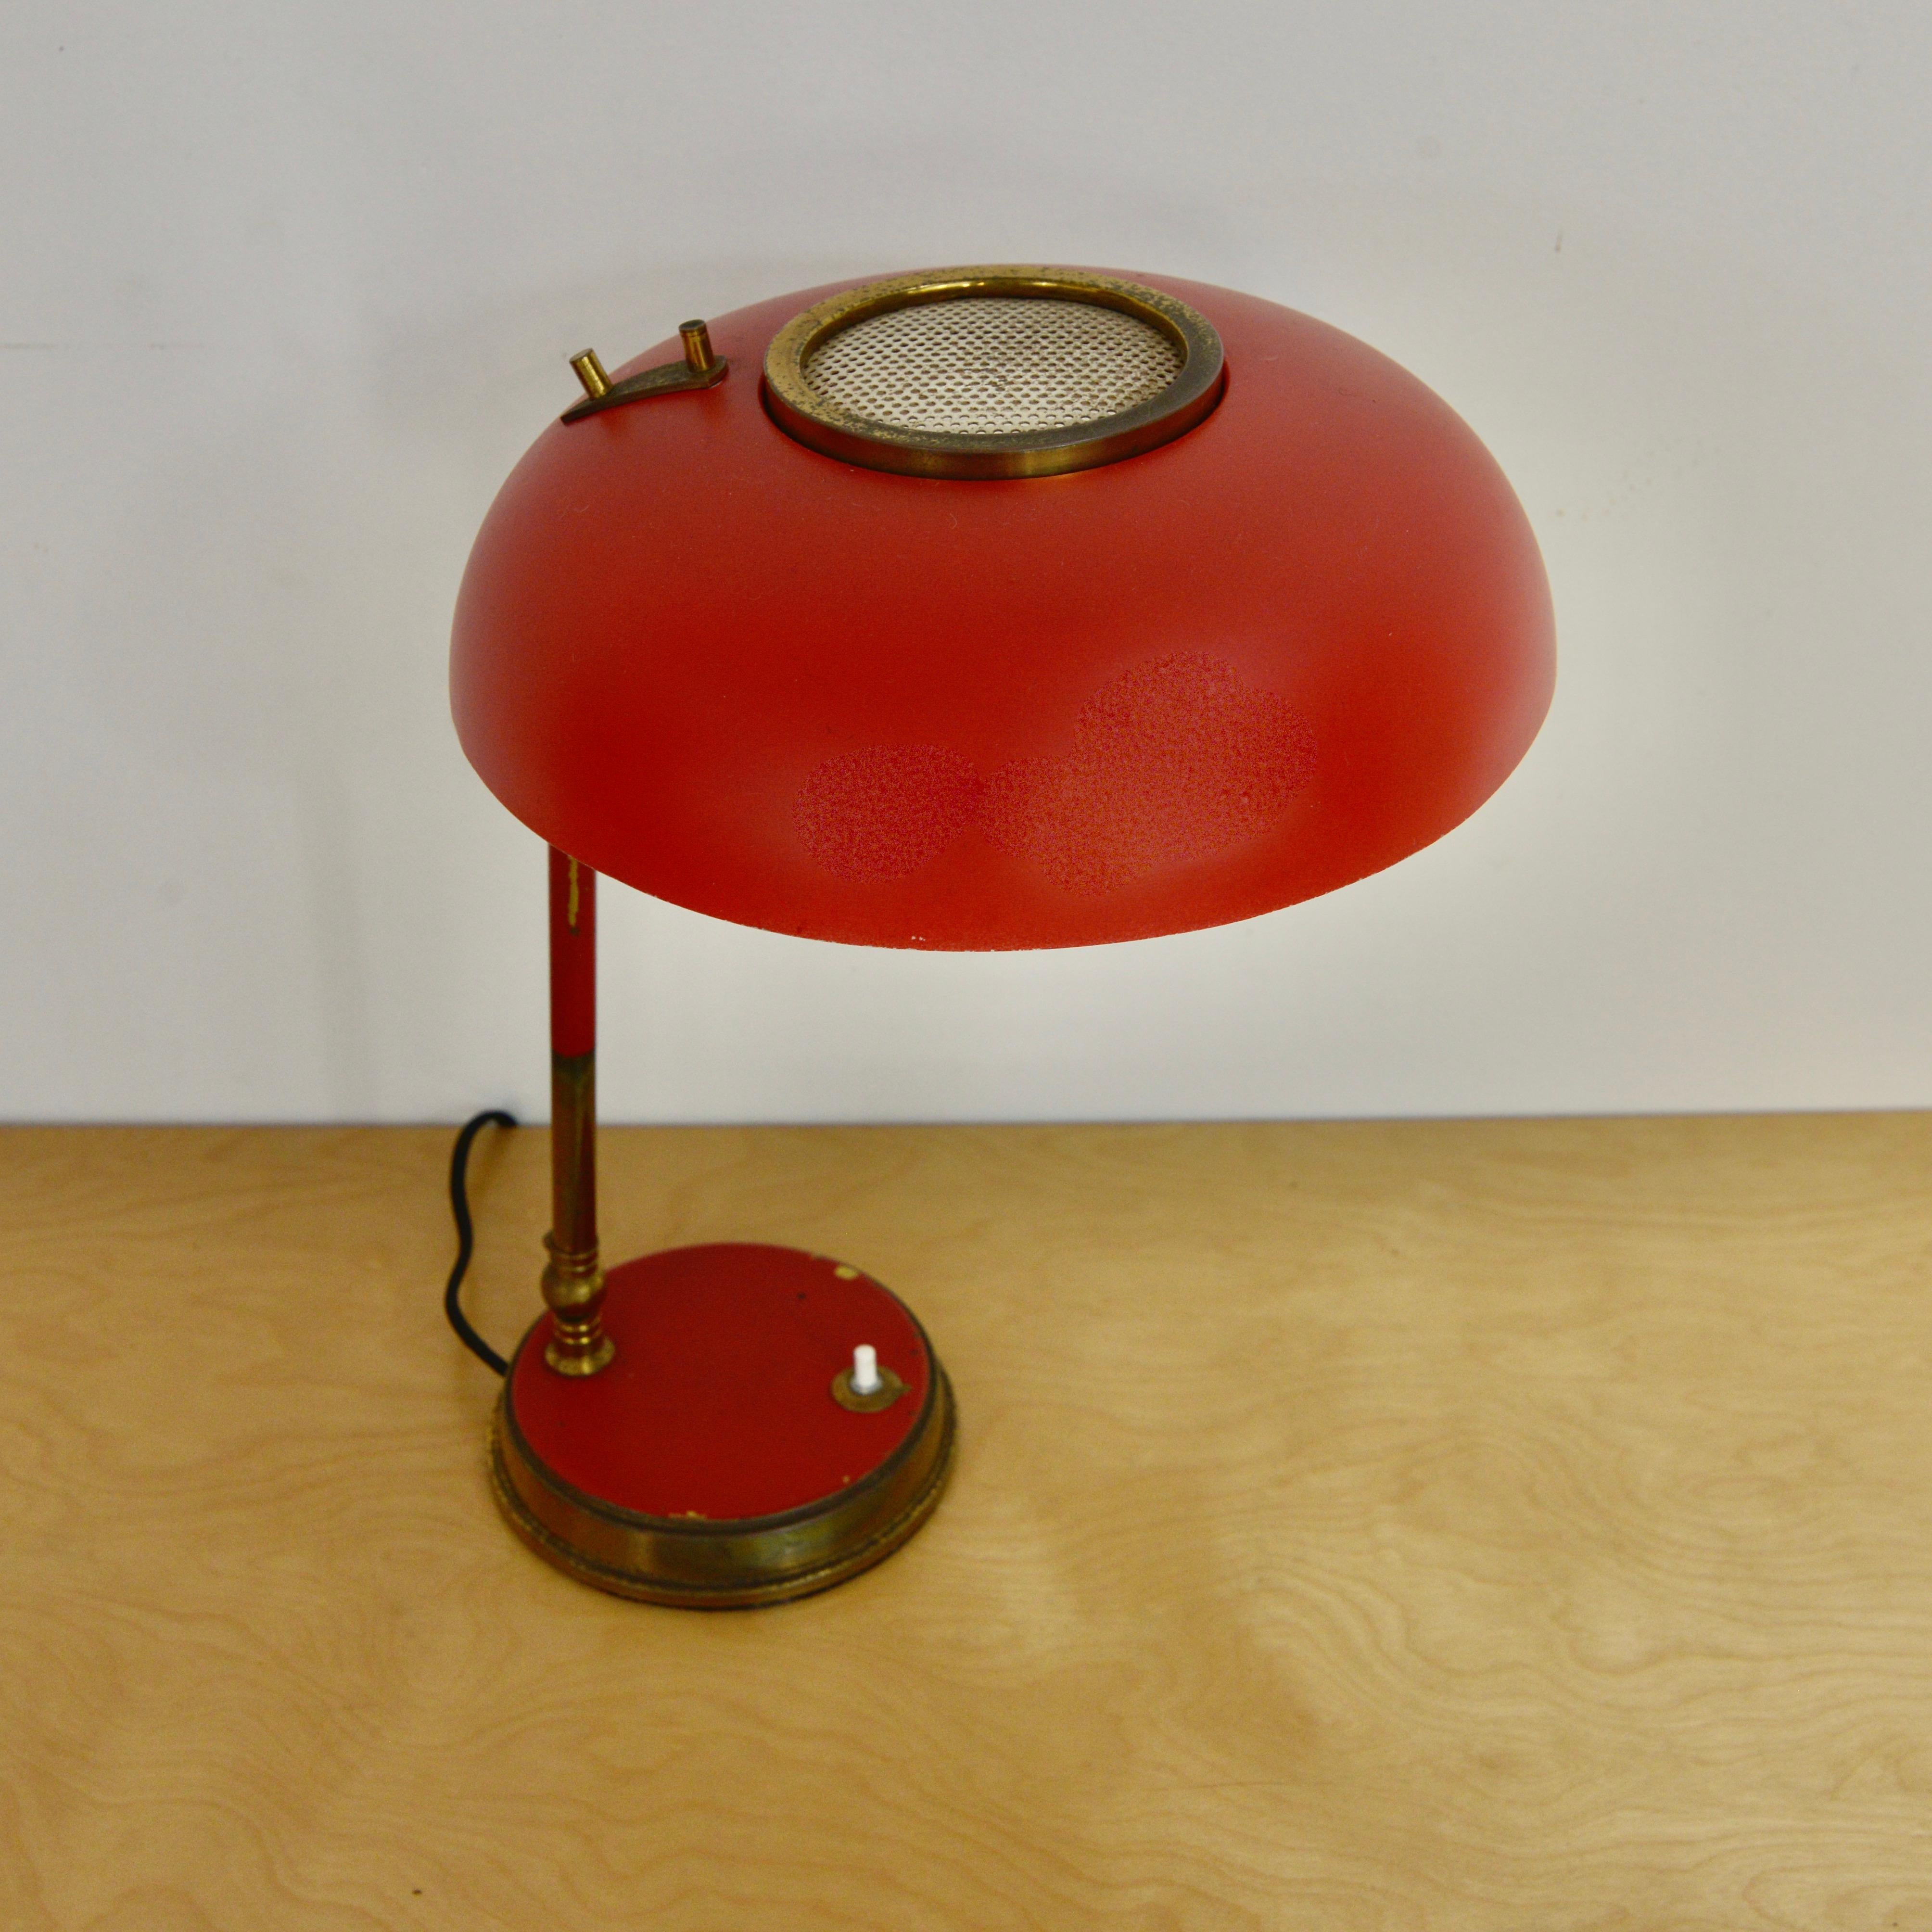 Fantastische italienische Tischlampe in Rot und Messing von Oscar Torlasco aus den 1950er Jahren. Natürlich gealtertes Messing. Schirm und Stiel lassen sich für die Ausrichtung des Lichts verstellen. Vollständig neu verdrahtet für die USA mit einer